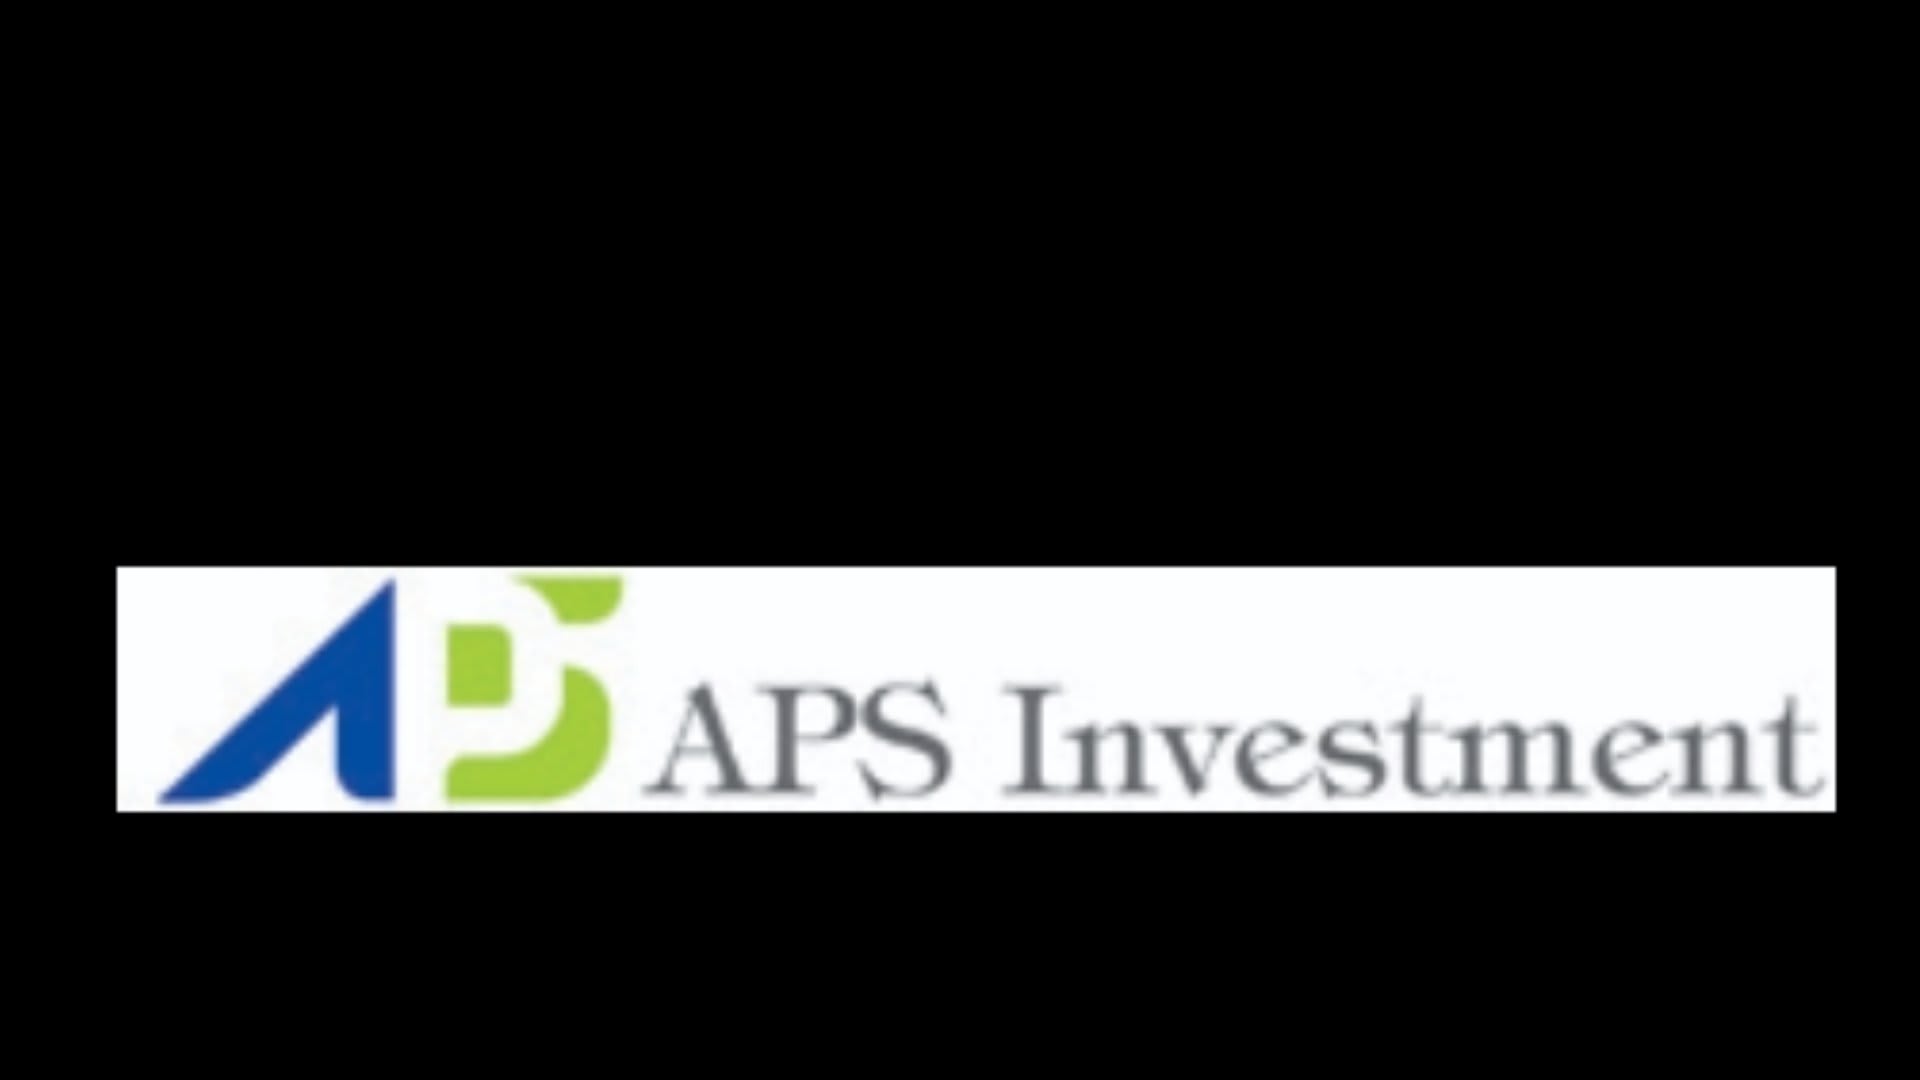 APS INVESTMENT